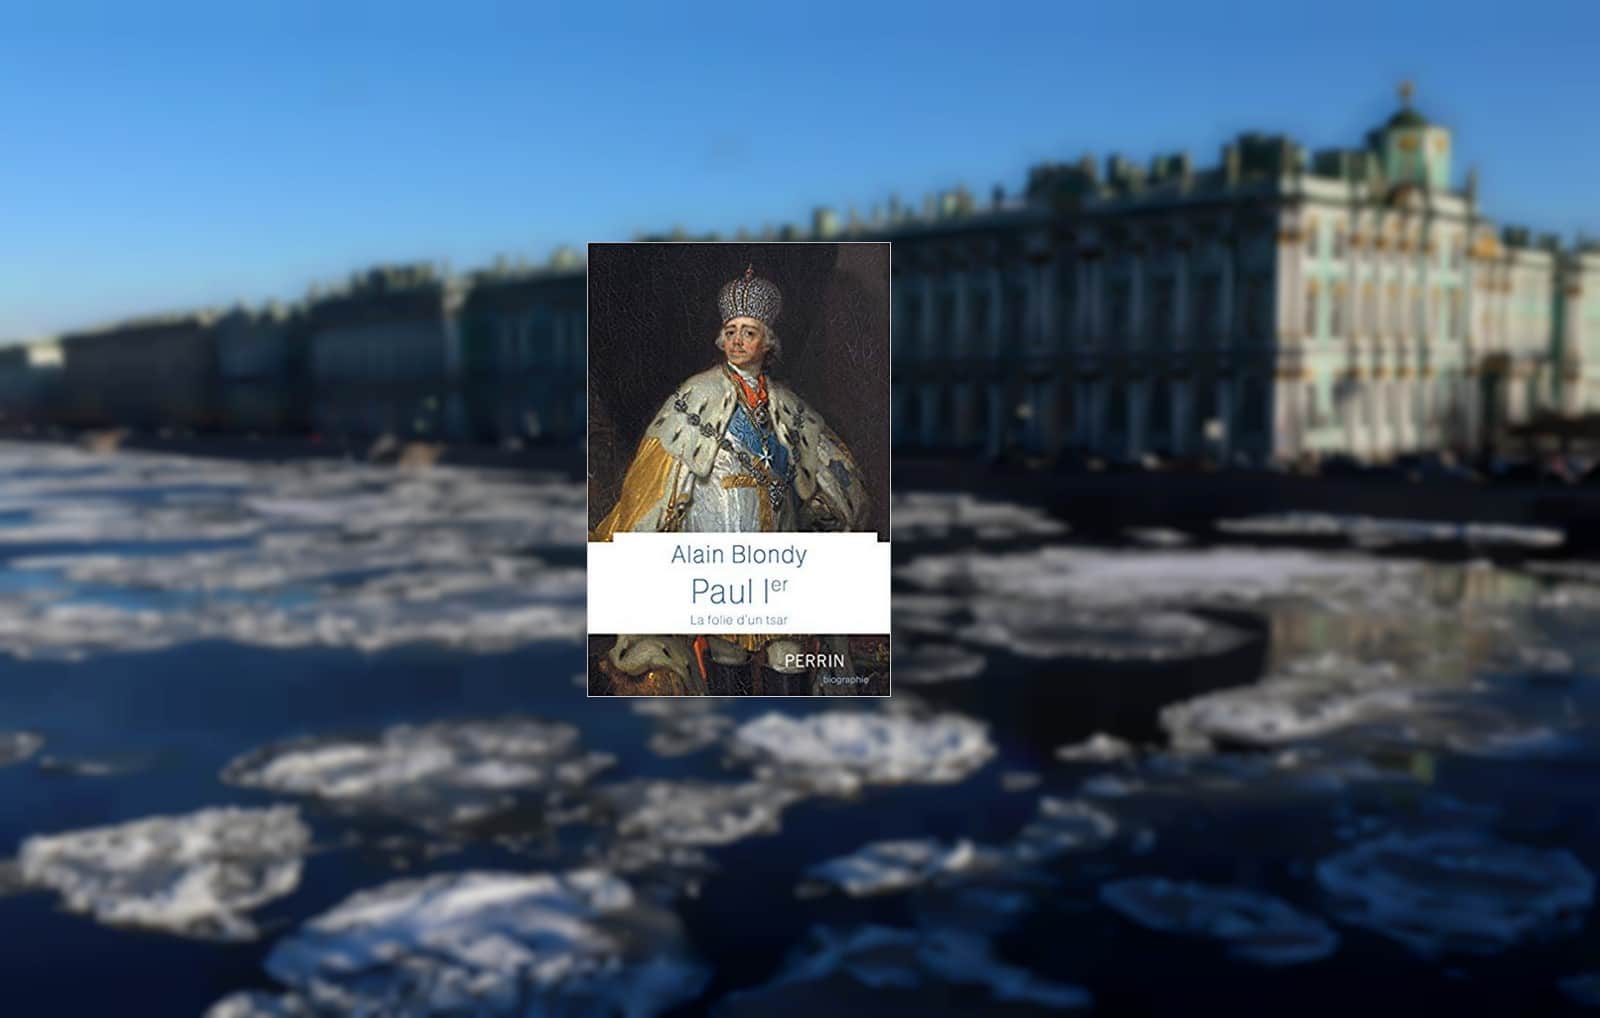 Derrière la Neva gelée, la résidence officielle des Tsars : le Palais d'hiver de Saint-Pétersbourg,
Auteurs  : Roman Pimenov/TASS/Sipa USA/SIPA,
Numéro de reportage  : SIPAUSA30205267_000005.